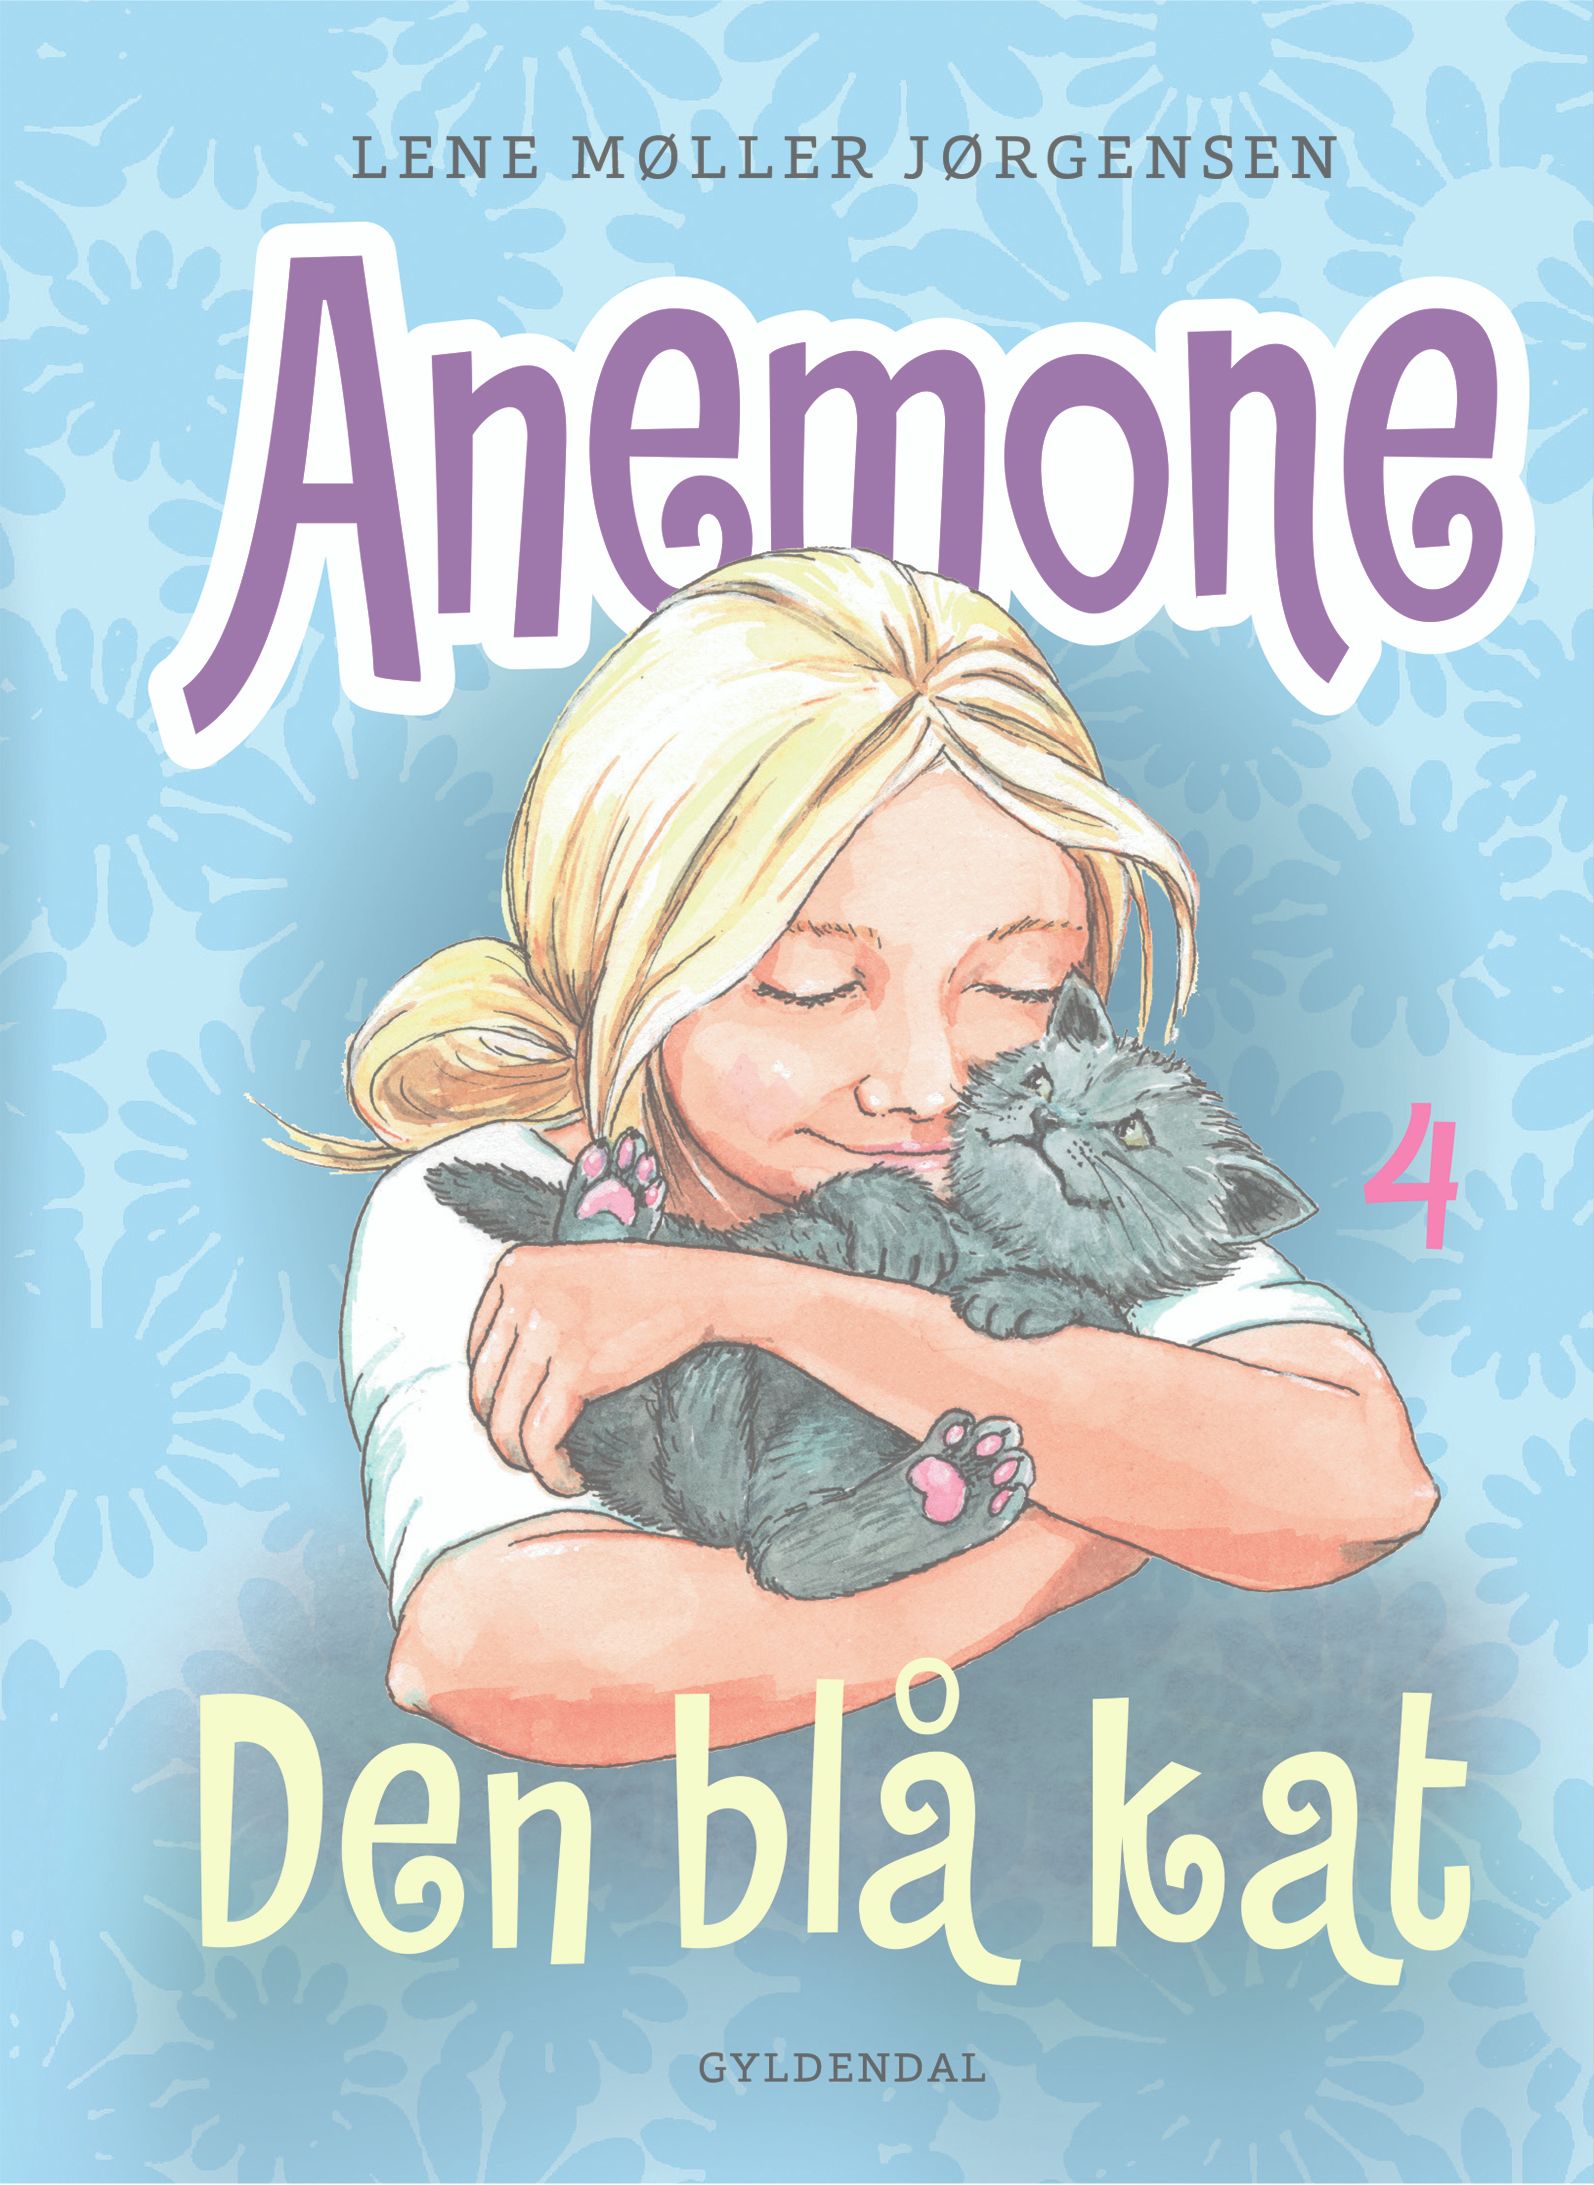 Anemone 4 - Den blå kat, e-bog af Lene Møller Jørgensen